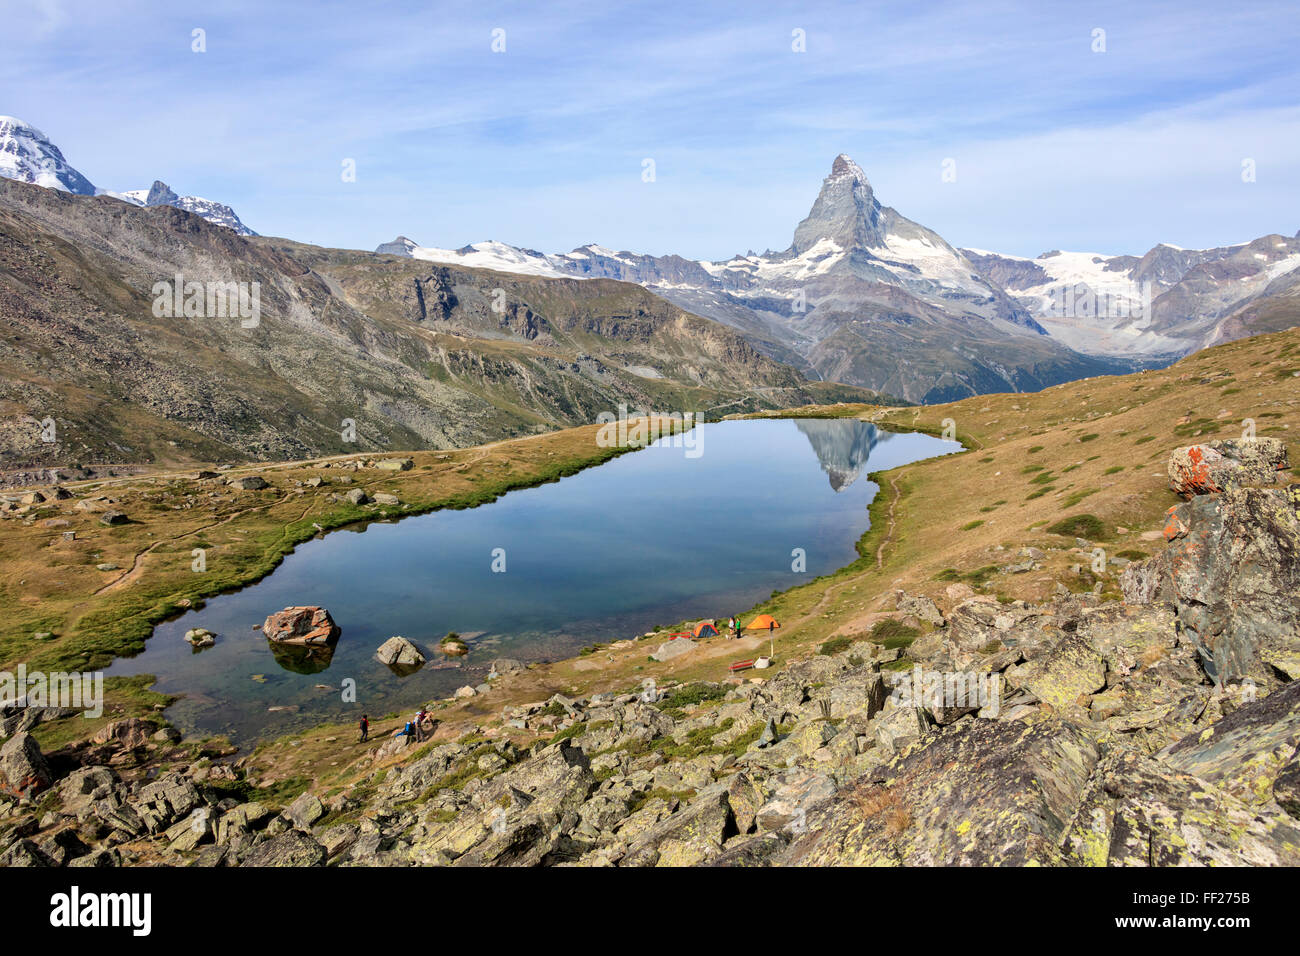 Gli escursionisti ammirare il Cervino riflesso nel lago Stellisee, Zermatt, Canton Vallese, Pennine, alpi svizzere, Svizzera Foto Stock